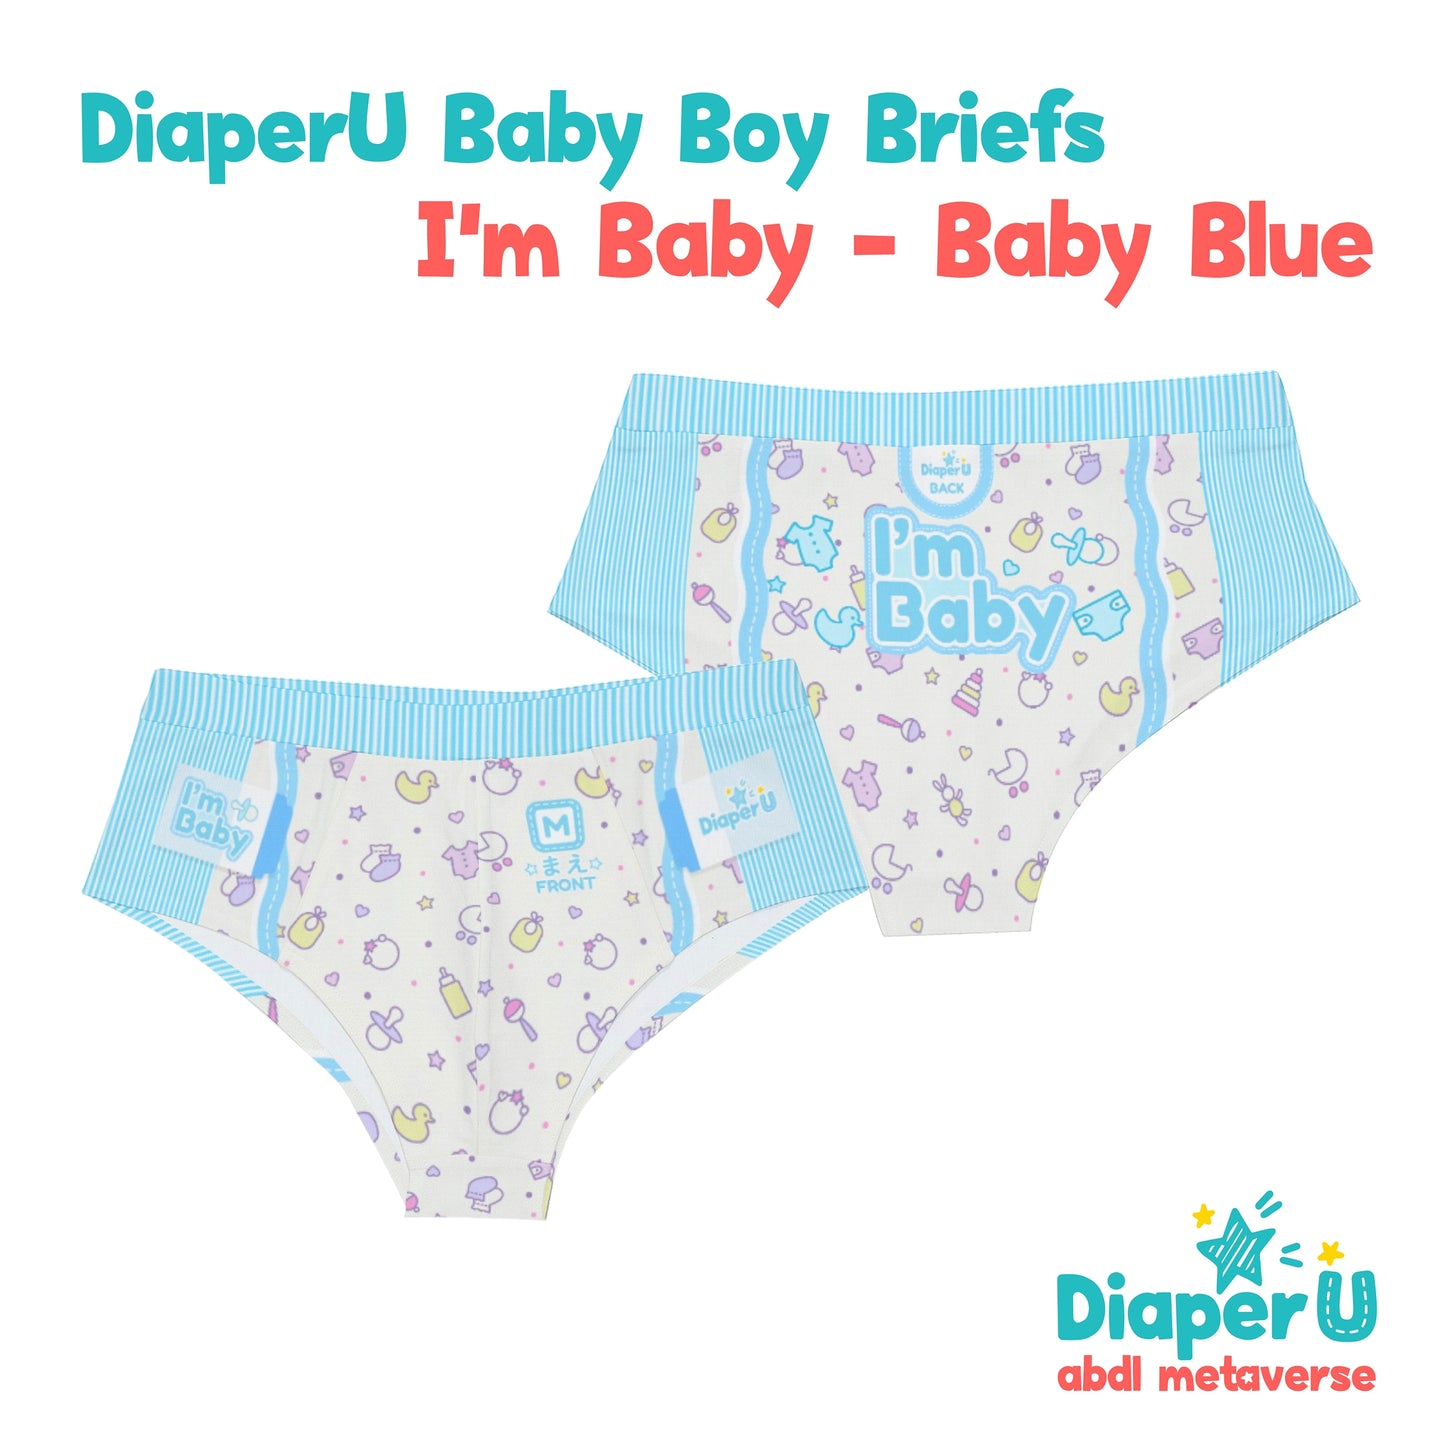 ABDL Adult Baby Boy Briefs - I'm Baby (Baby Blue) – DiaperU